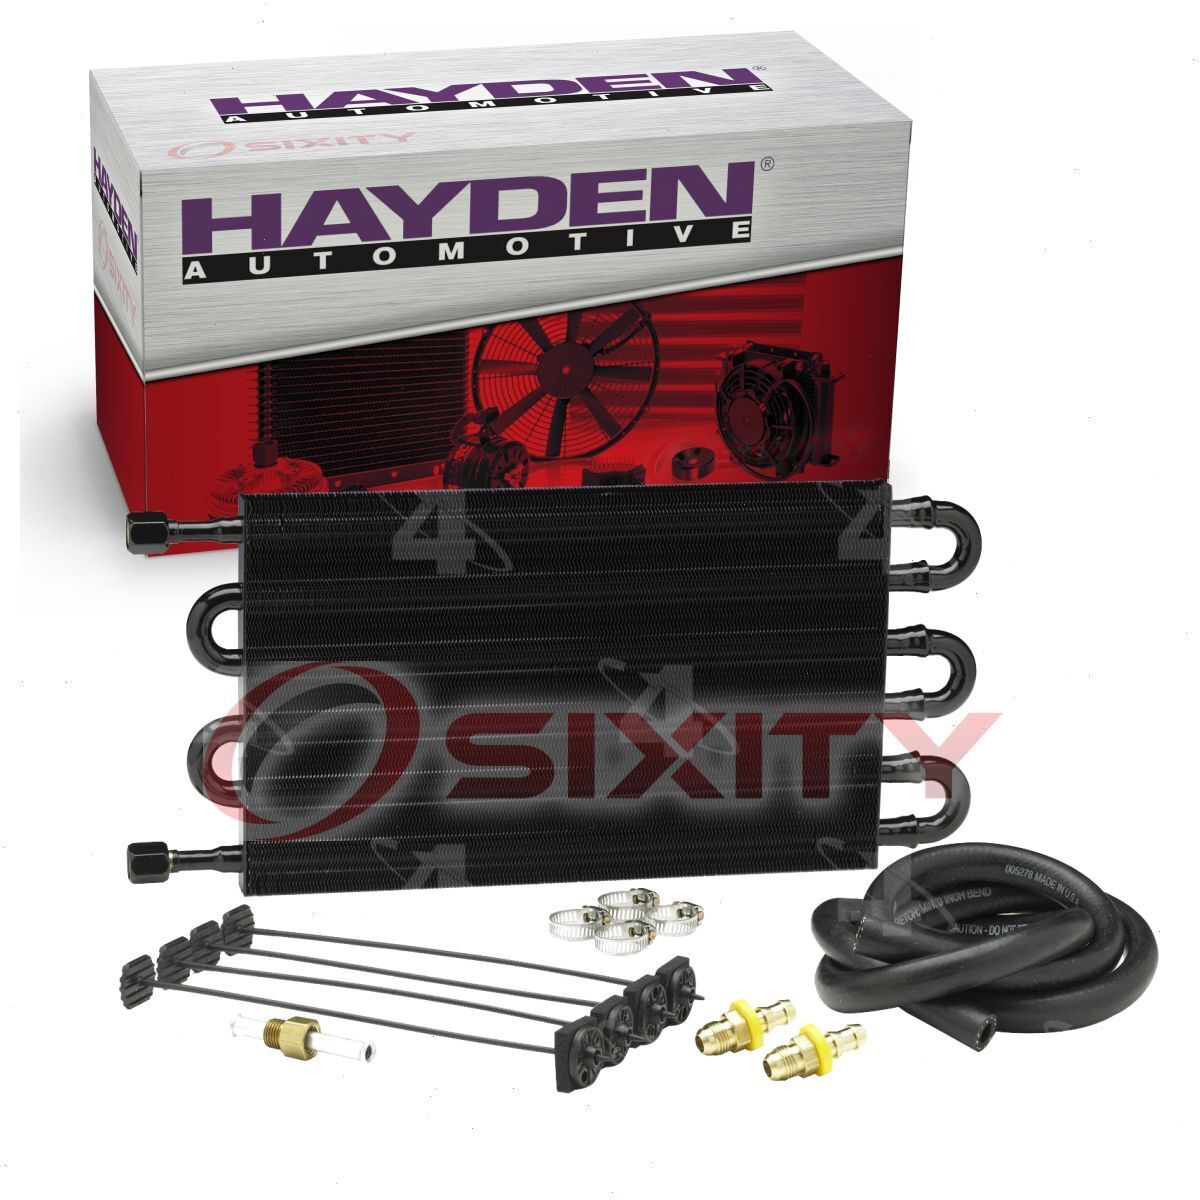 Hayden Automatic Transmission Oil Cooler for 1942-2004 Oldsmobile 442 88 98 tz